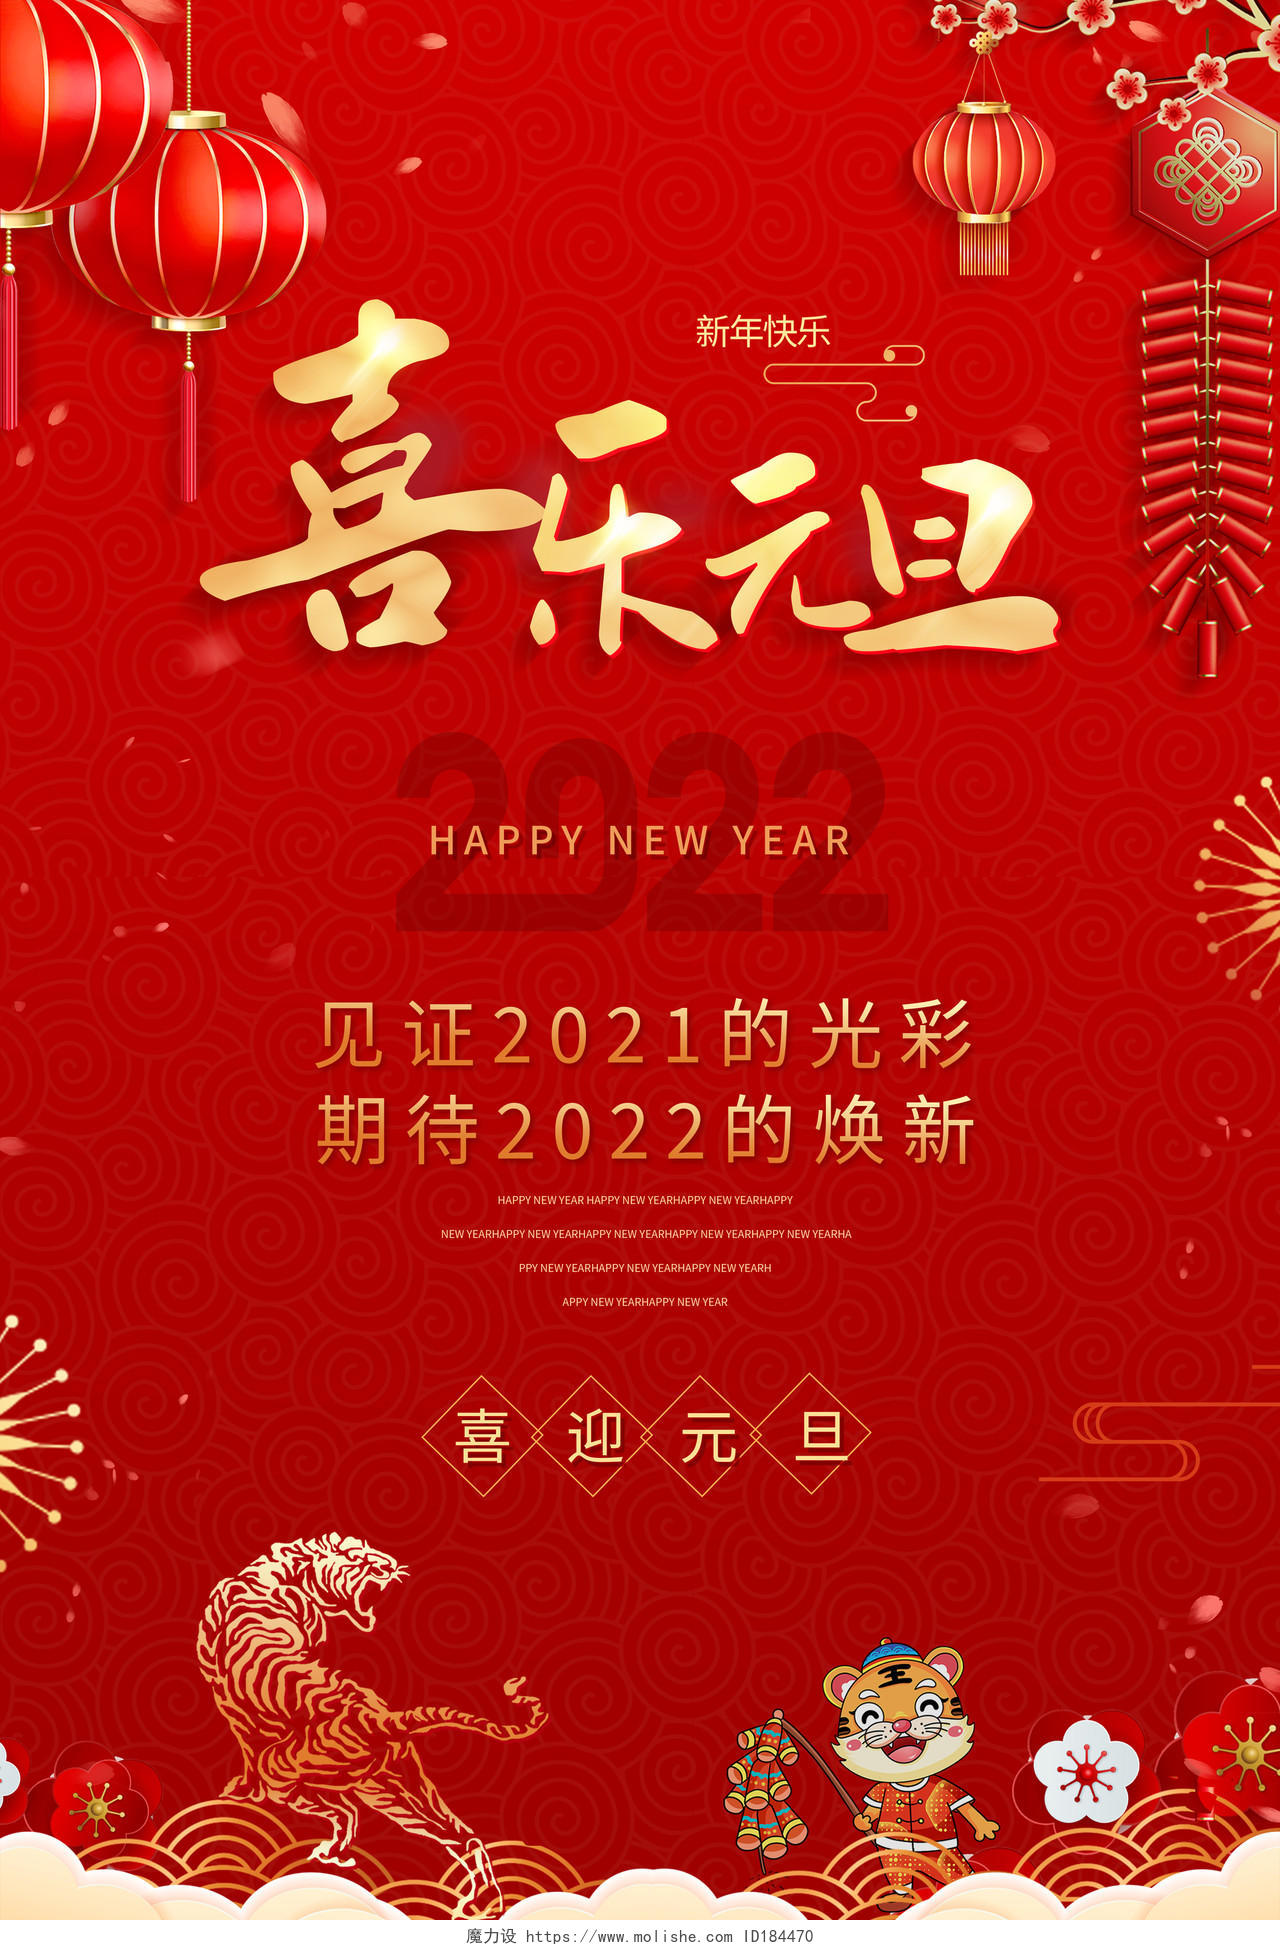 红色中国风2022喜乐元旦元旦节海报2021元旦新年元旦2021元旦新年元旦节